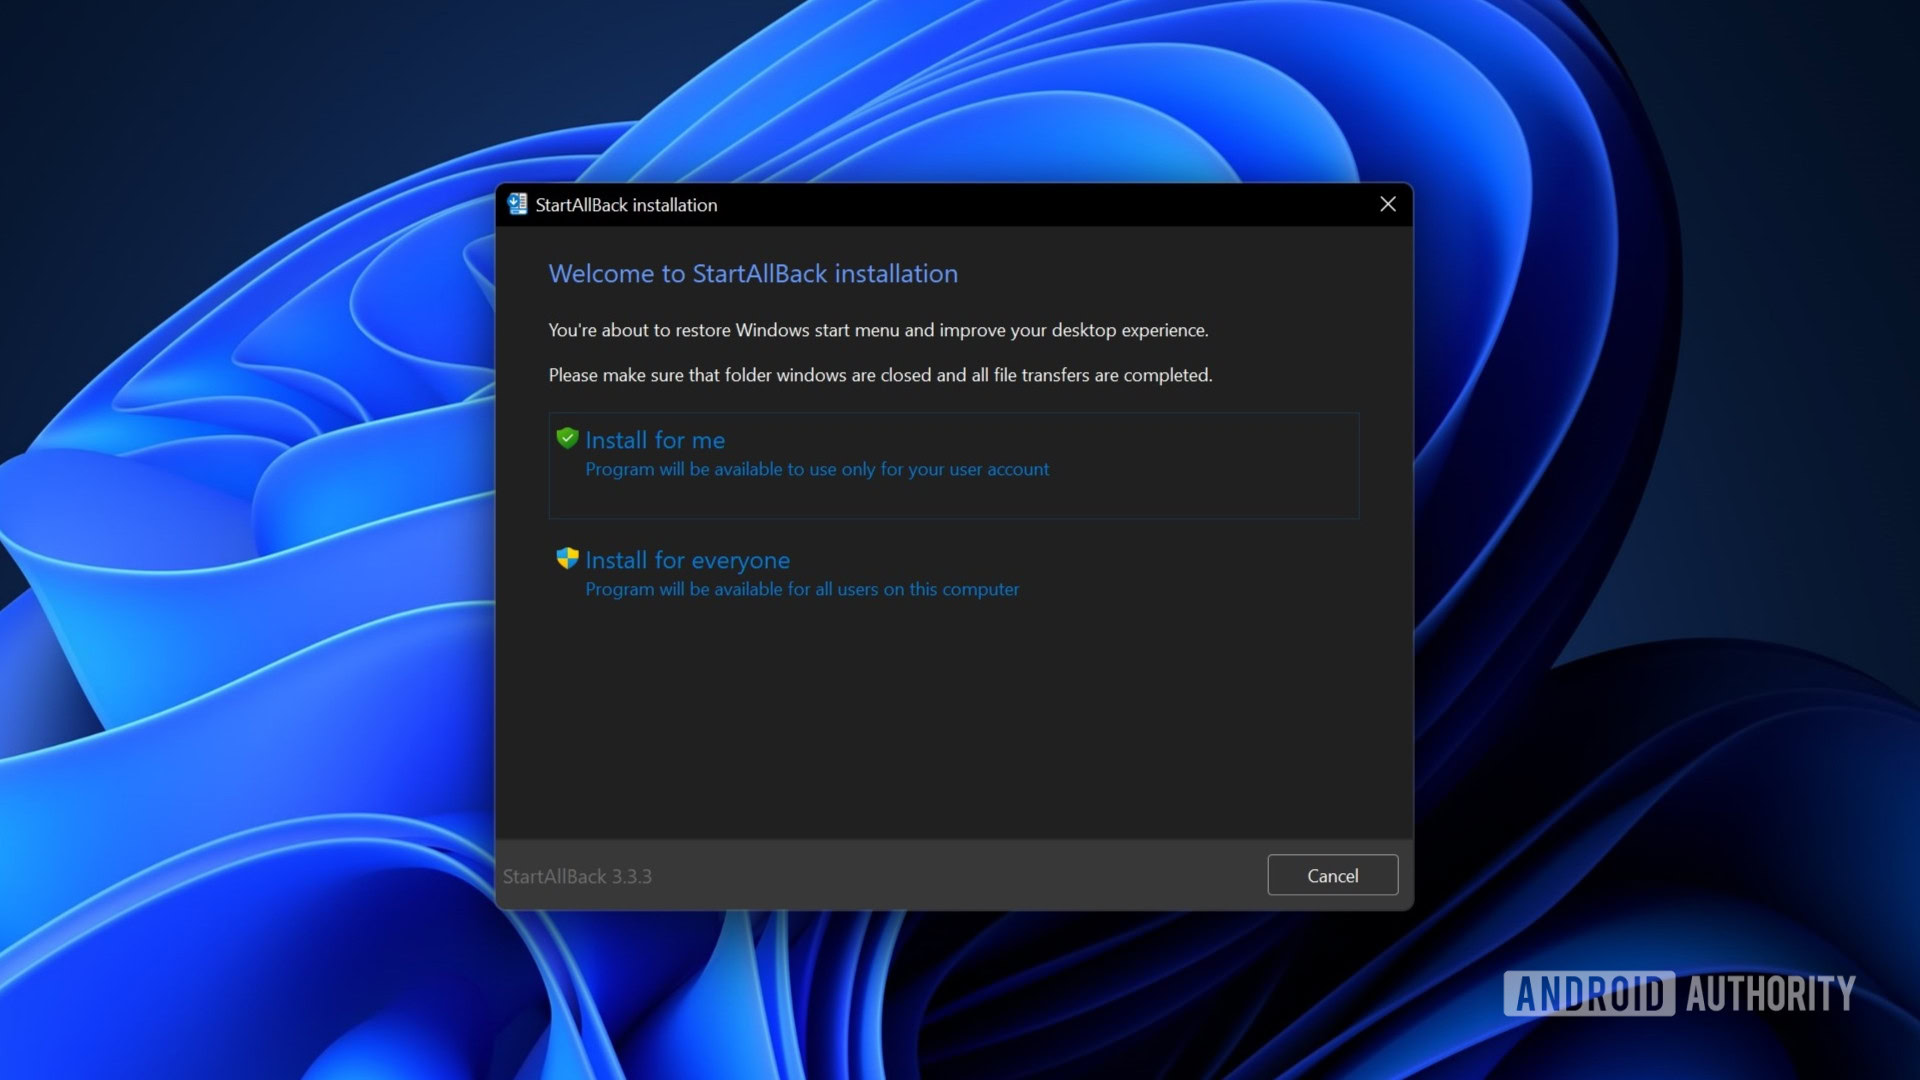 StartAllBack installation Windows 11 ungroup taskbar icons